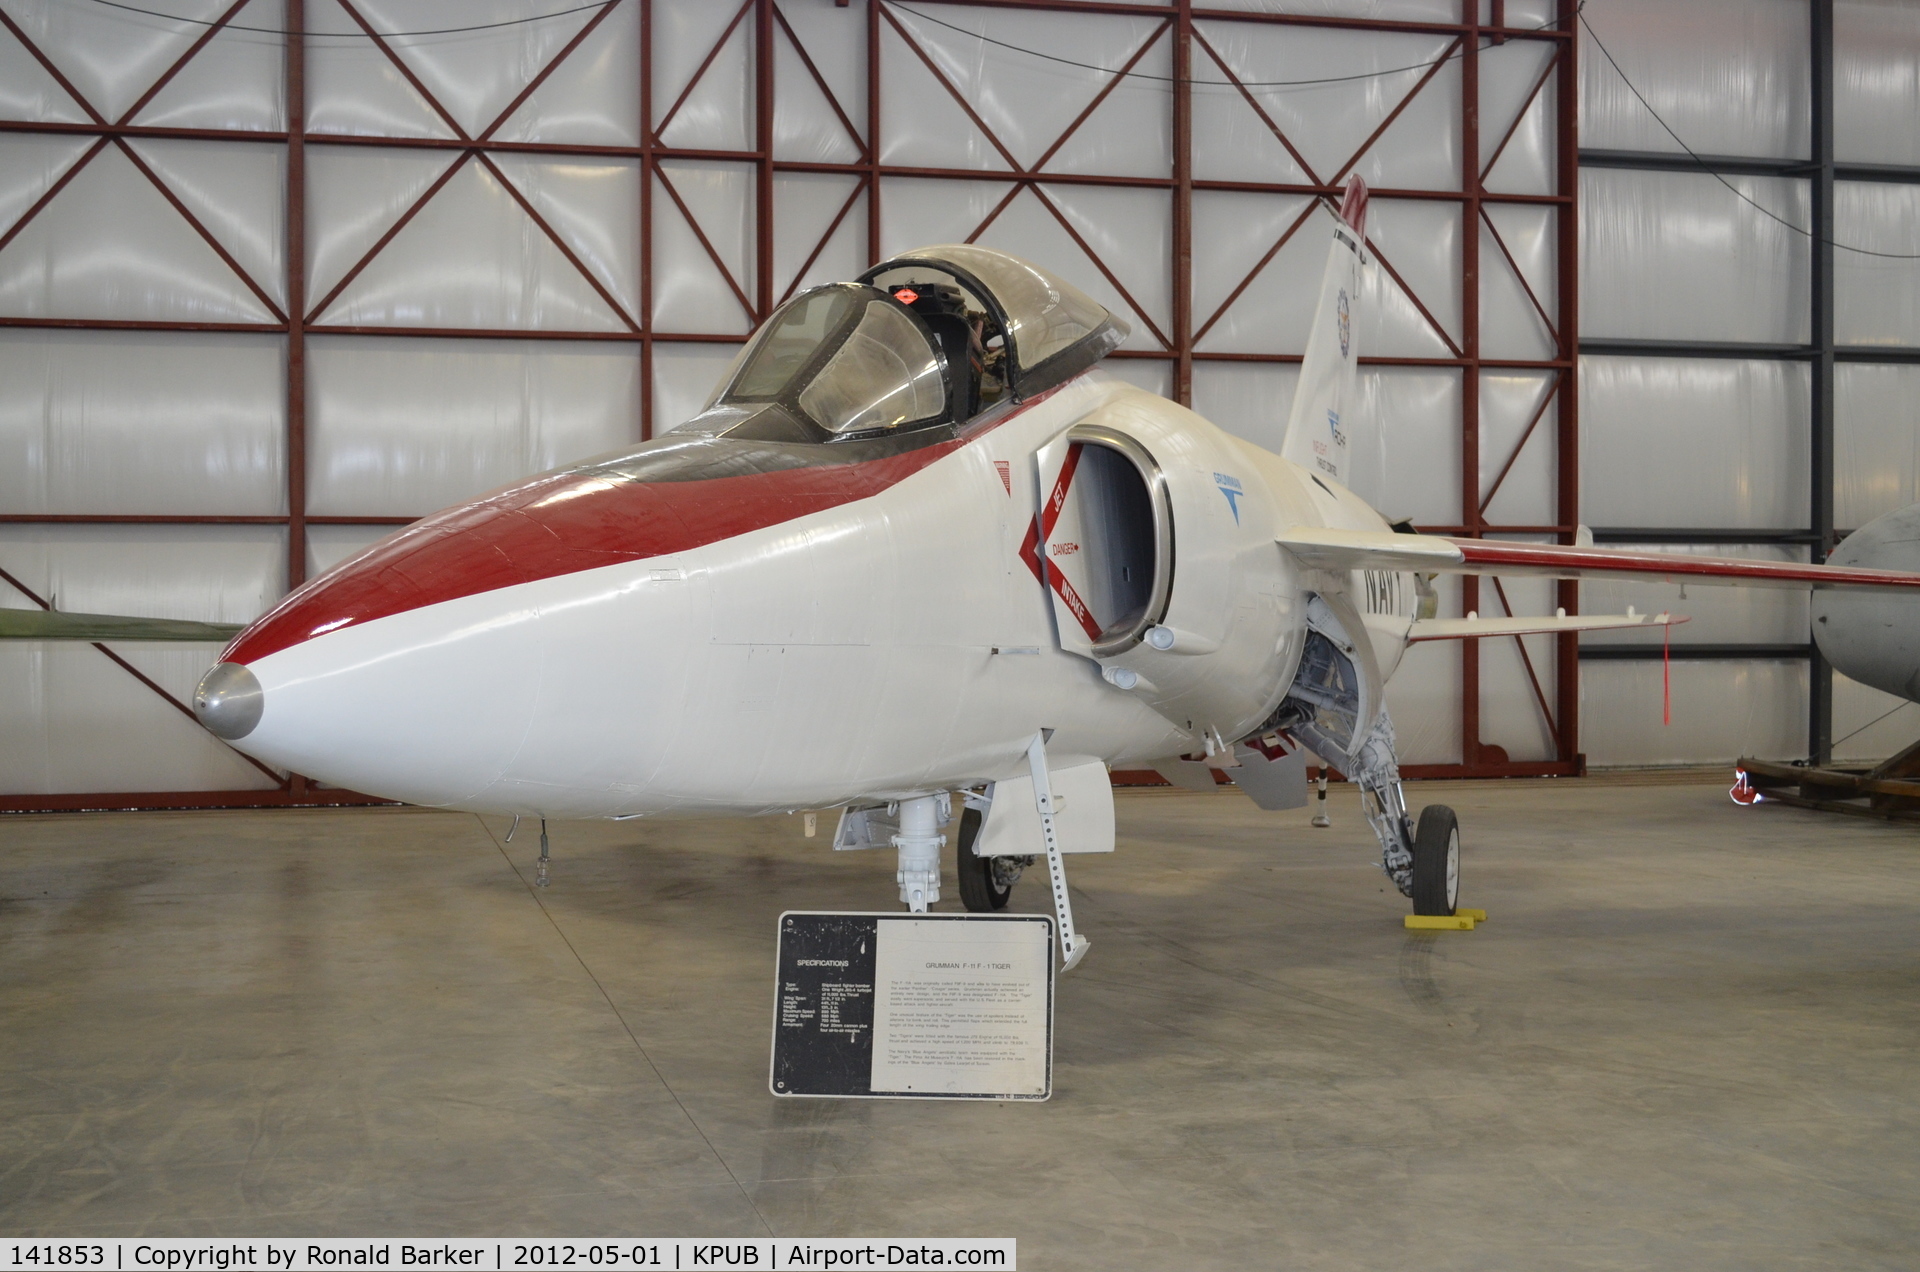 141853, Grumman F11F-1 Tiger C/N 170, Weisbrod Museum Pueblo